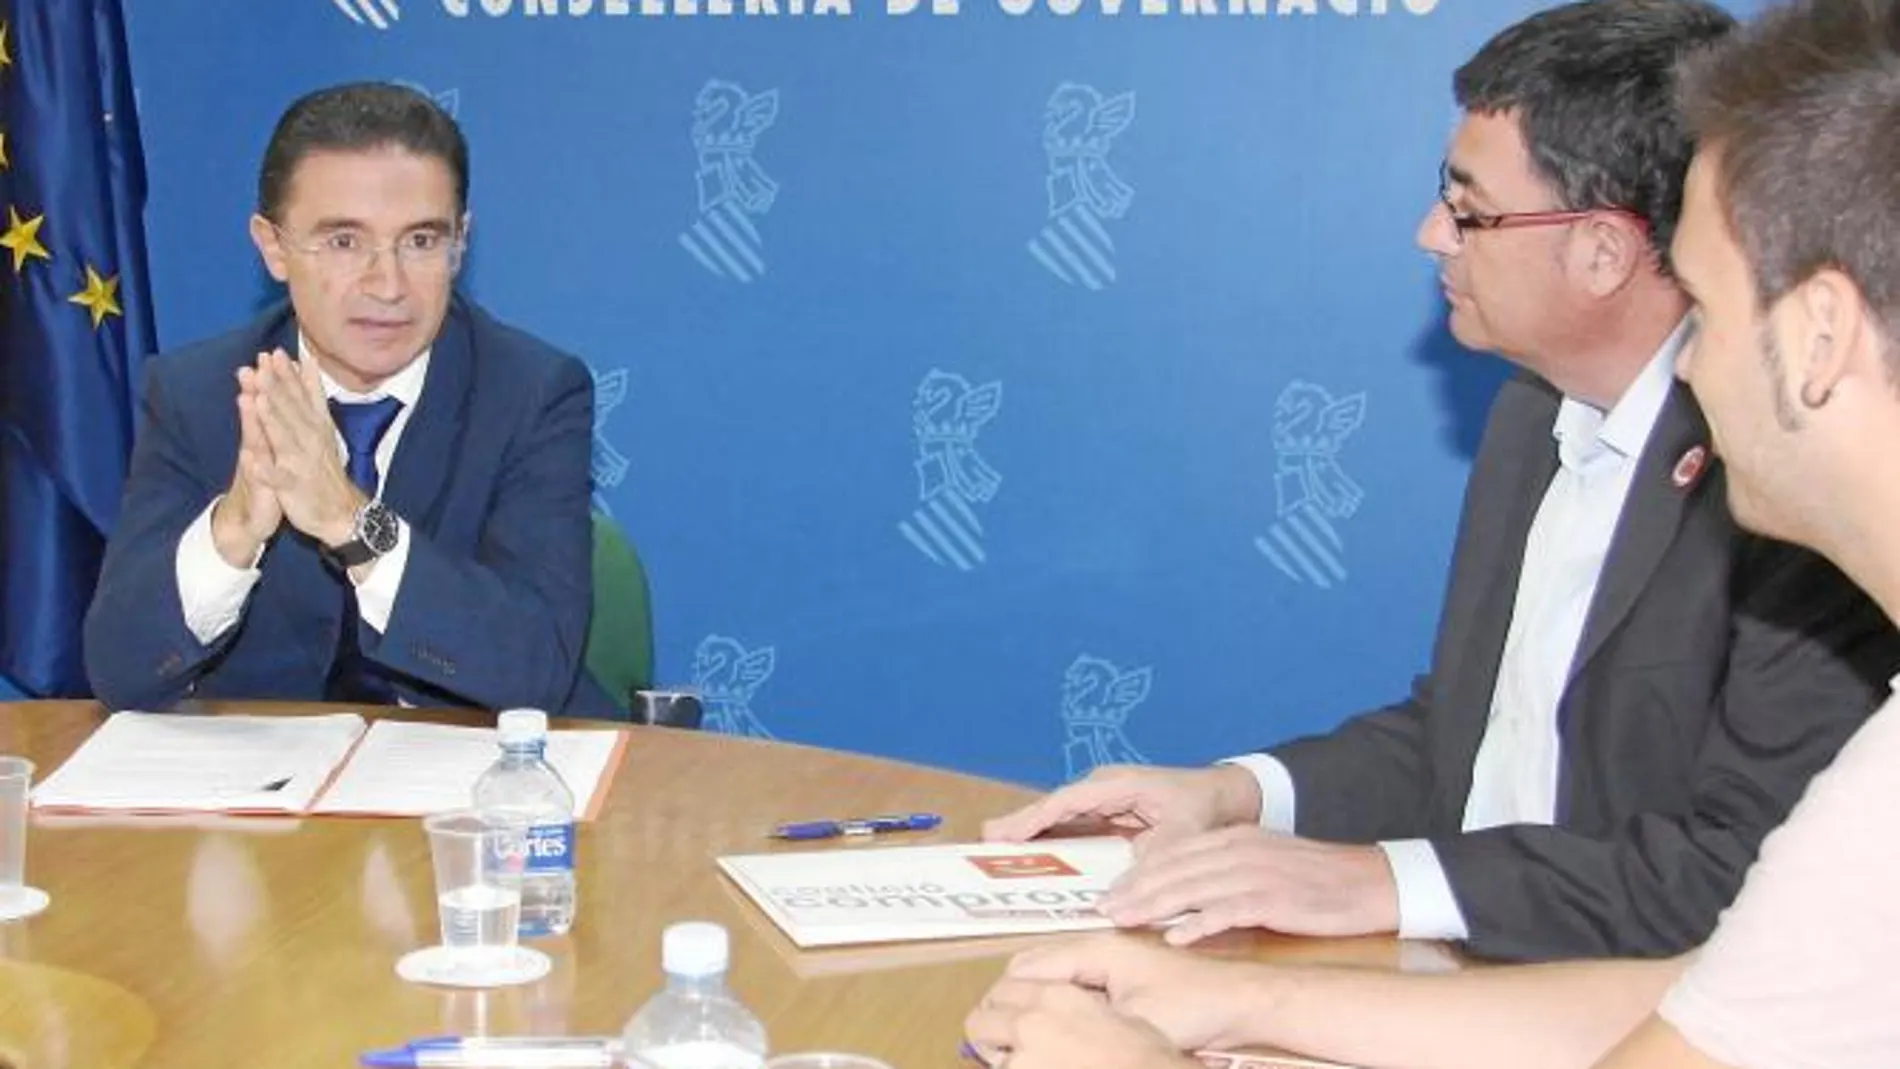 El conseller Serafín Castellano se reunió ayer con el portavoz del Compromís, Enric Morera, para debatir la reforma del Estatuto